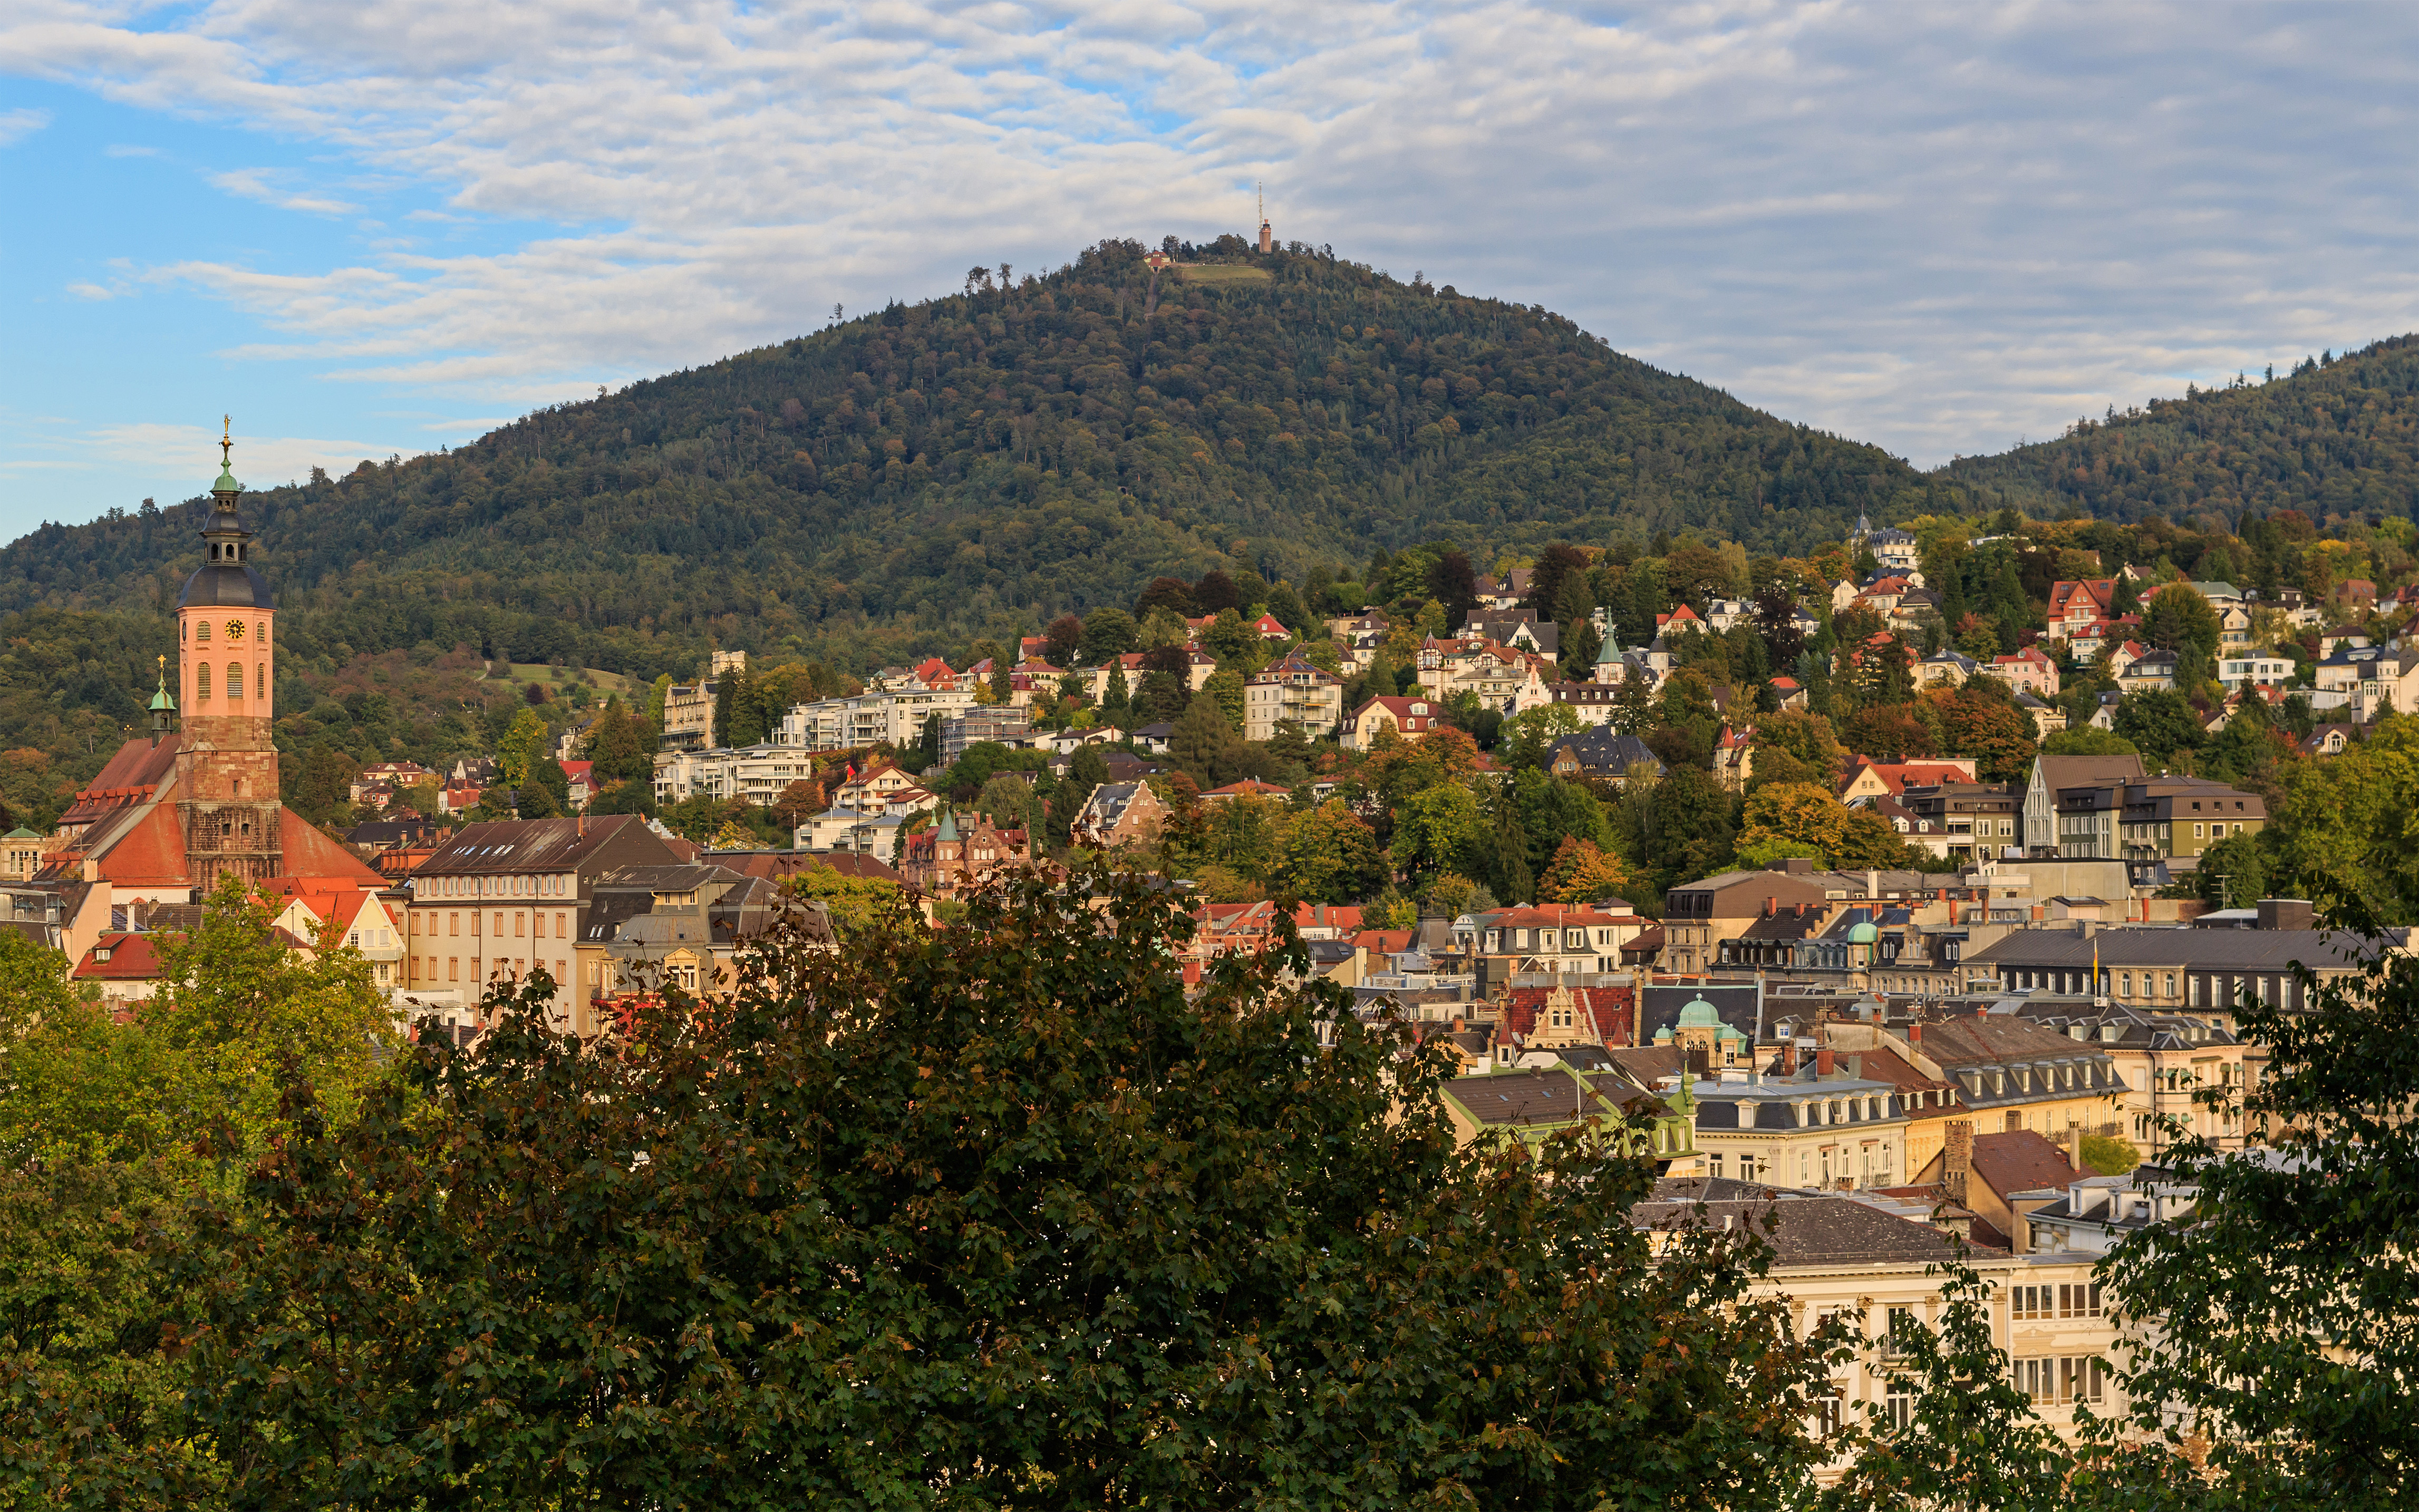 Baden-Baden 10-2015 img22 View from Kurpark